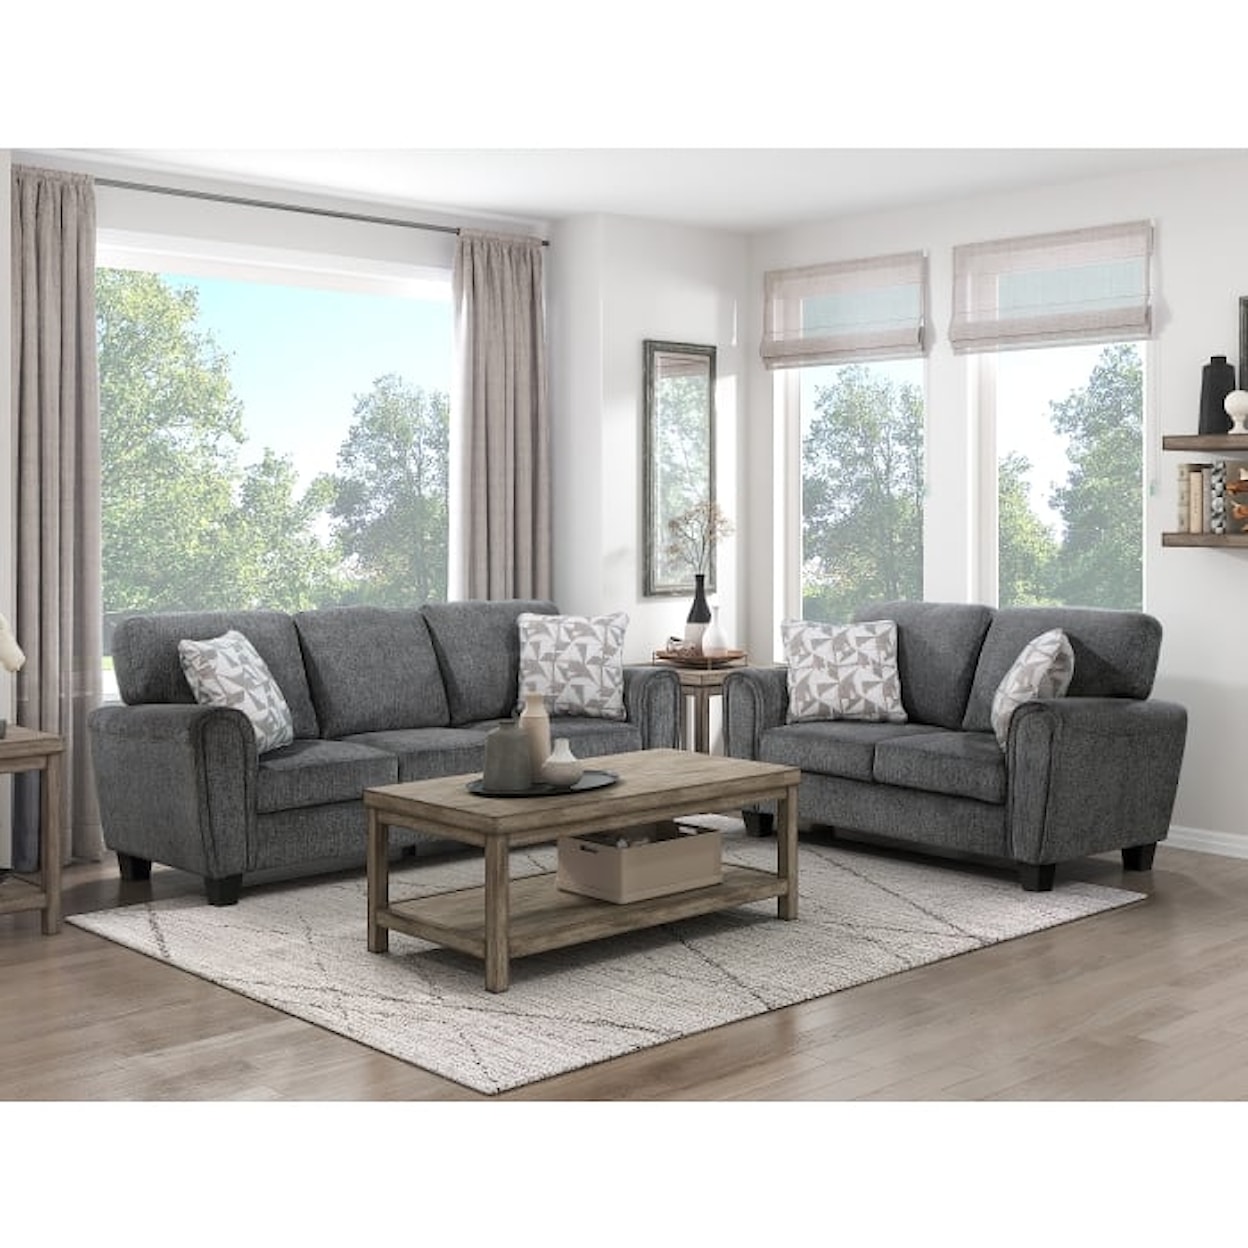 Homelegance Furniture Duncan Living Room Set